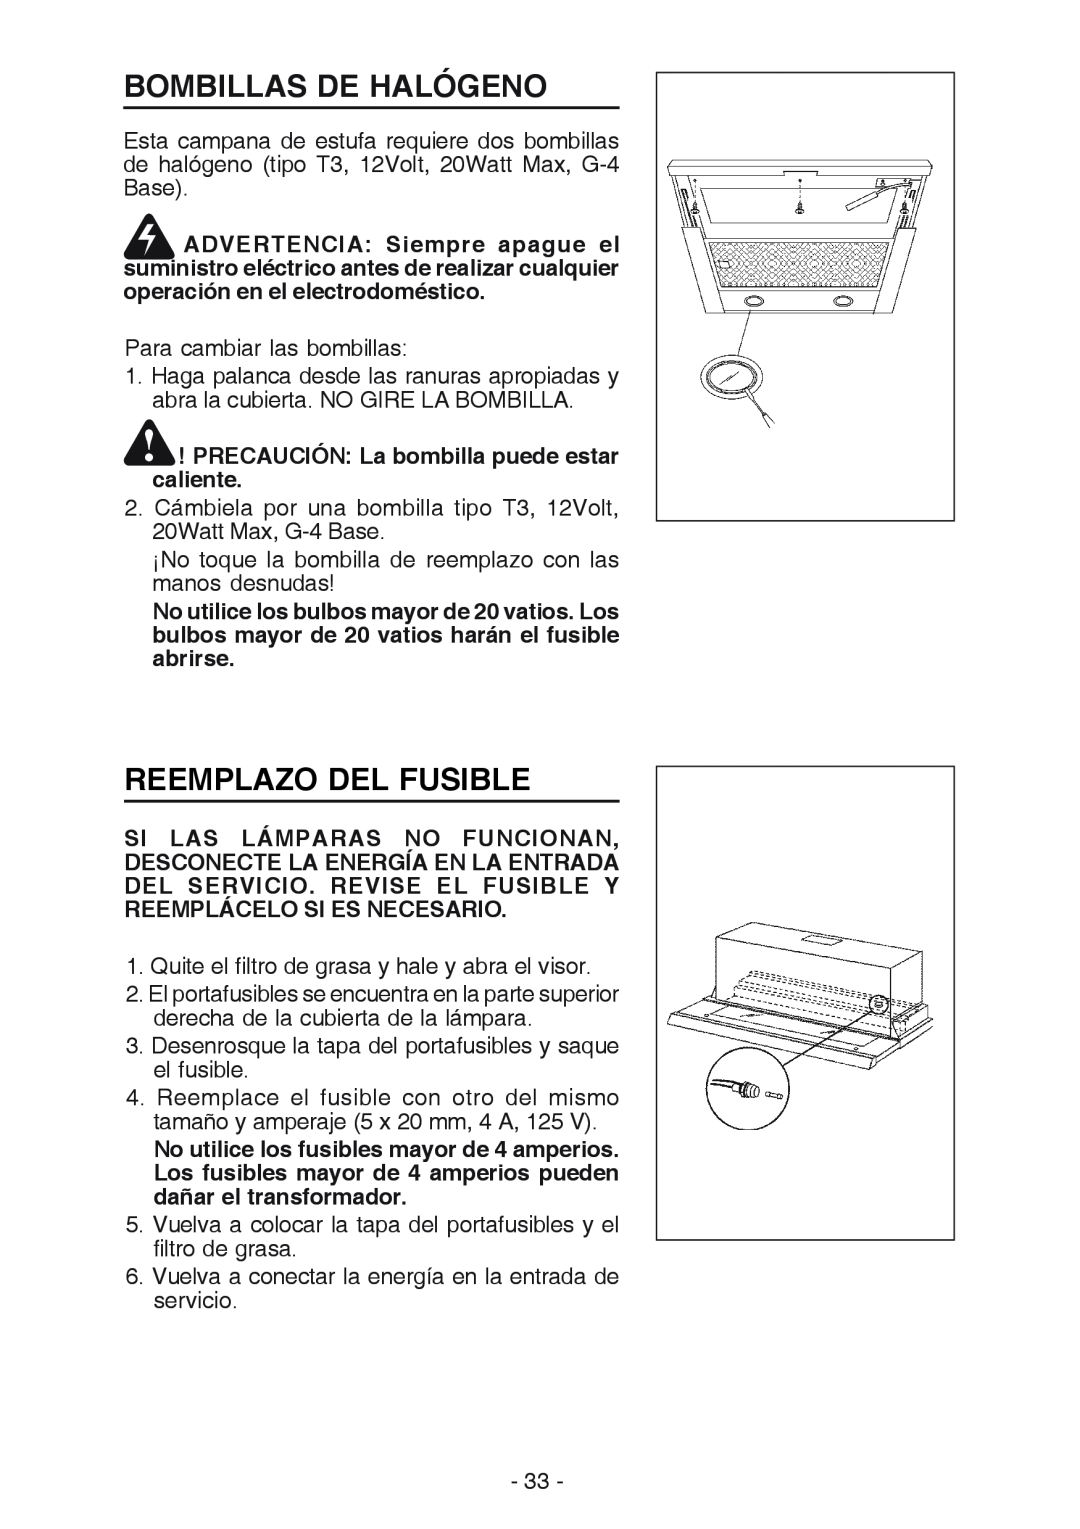 Best U102E manual Bombillas De Halógeno, Reemplazo Del Fusible, PRECAUCIÓN La bombilla puede estar caliente 